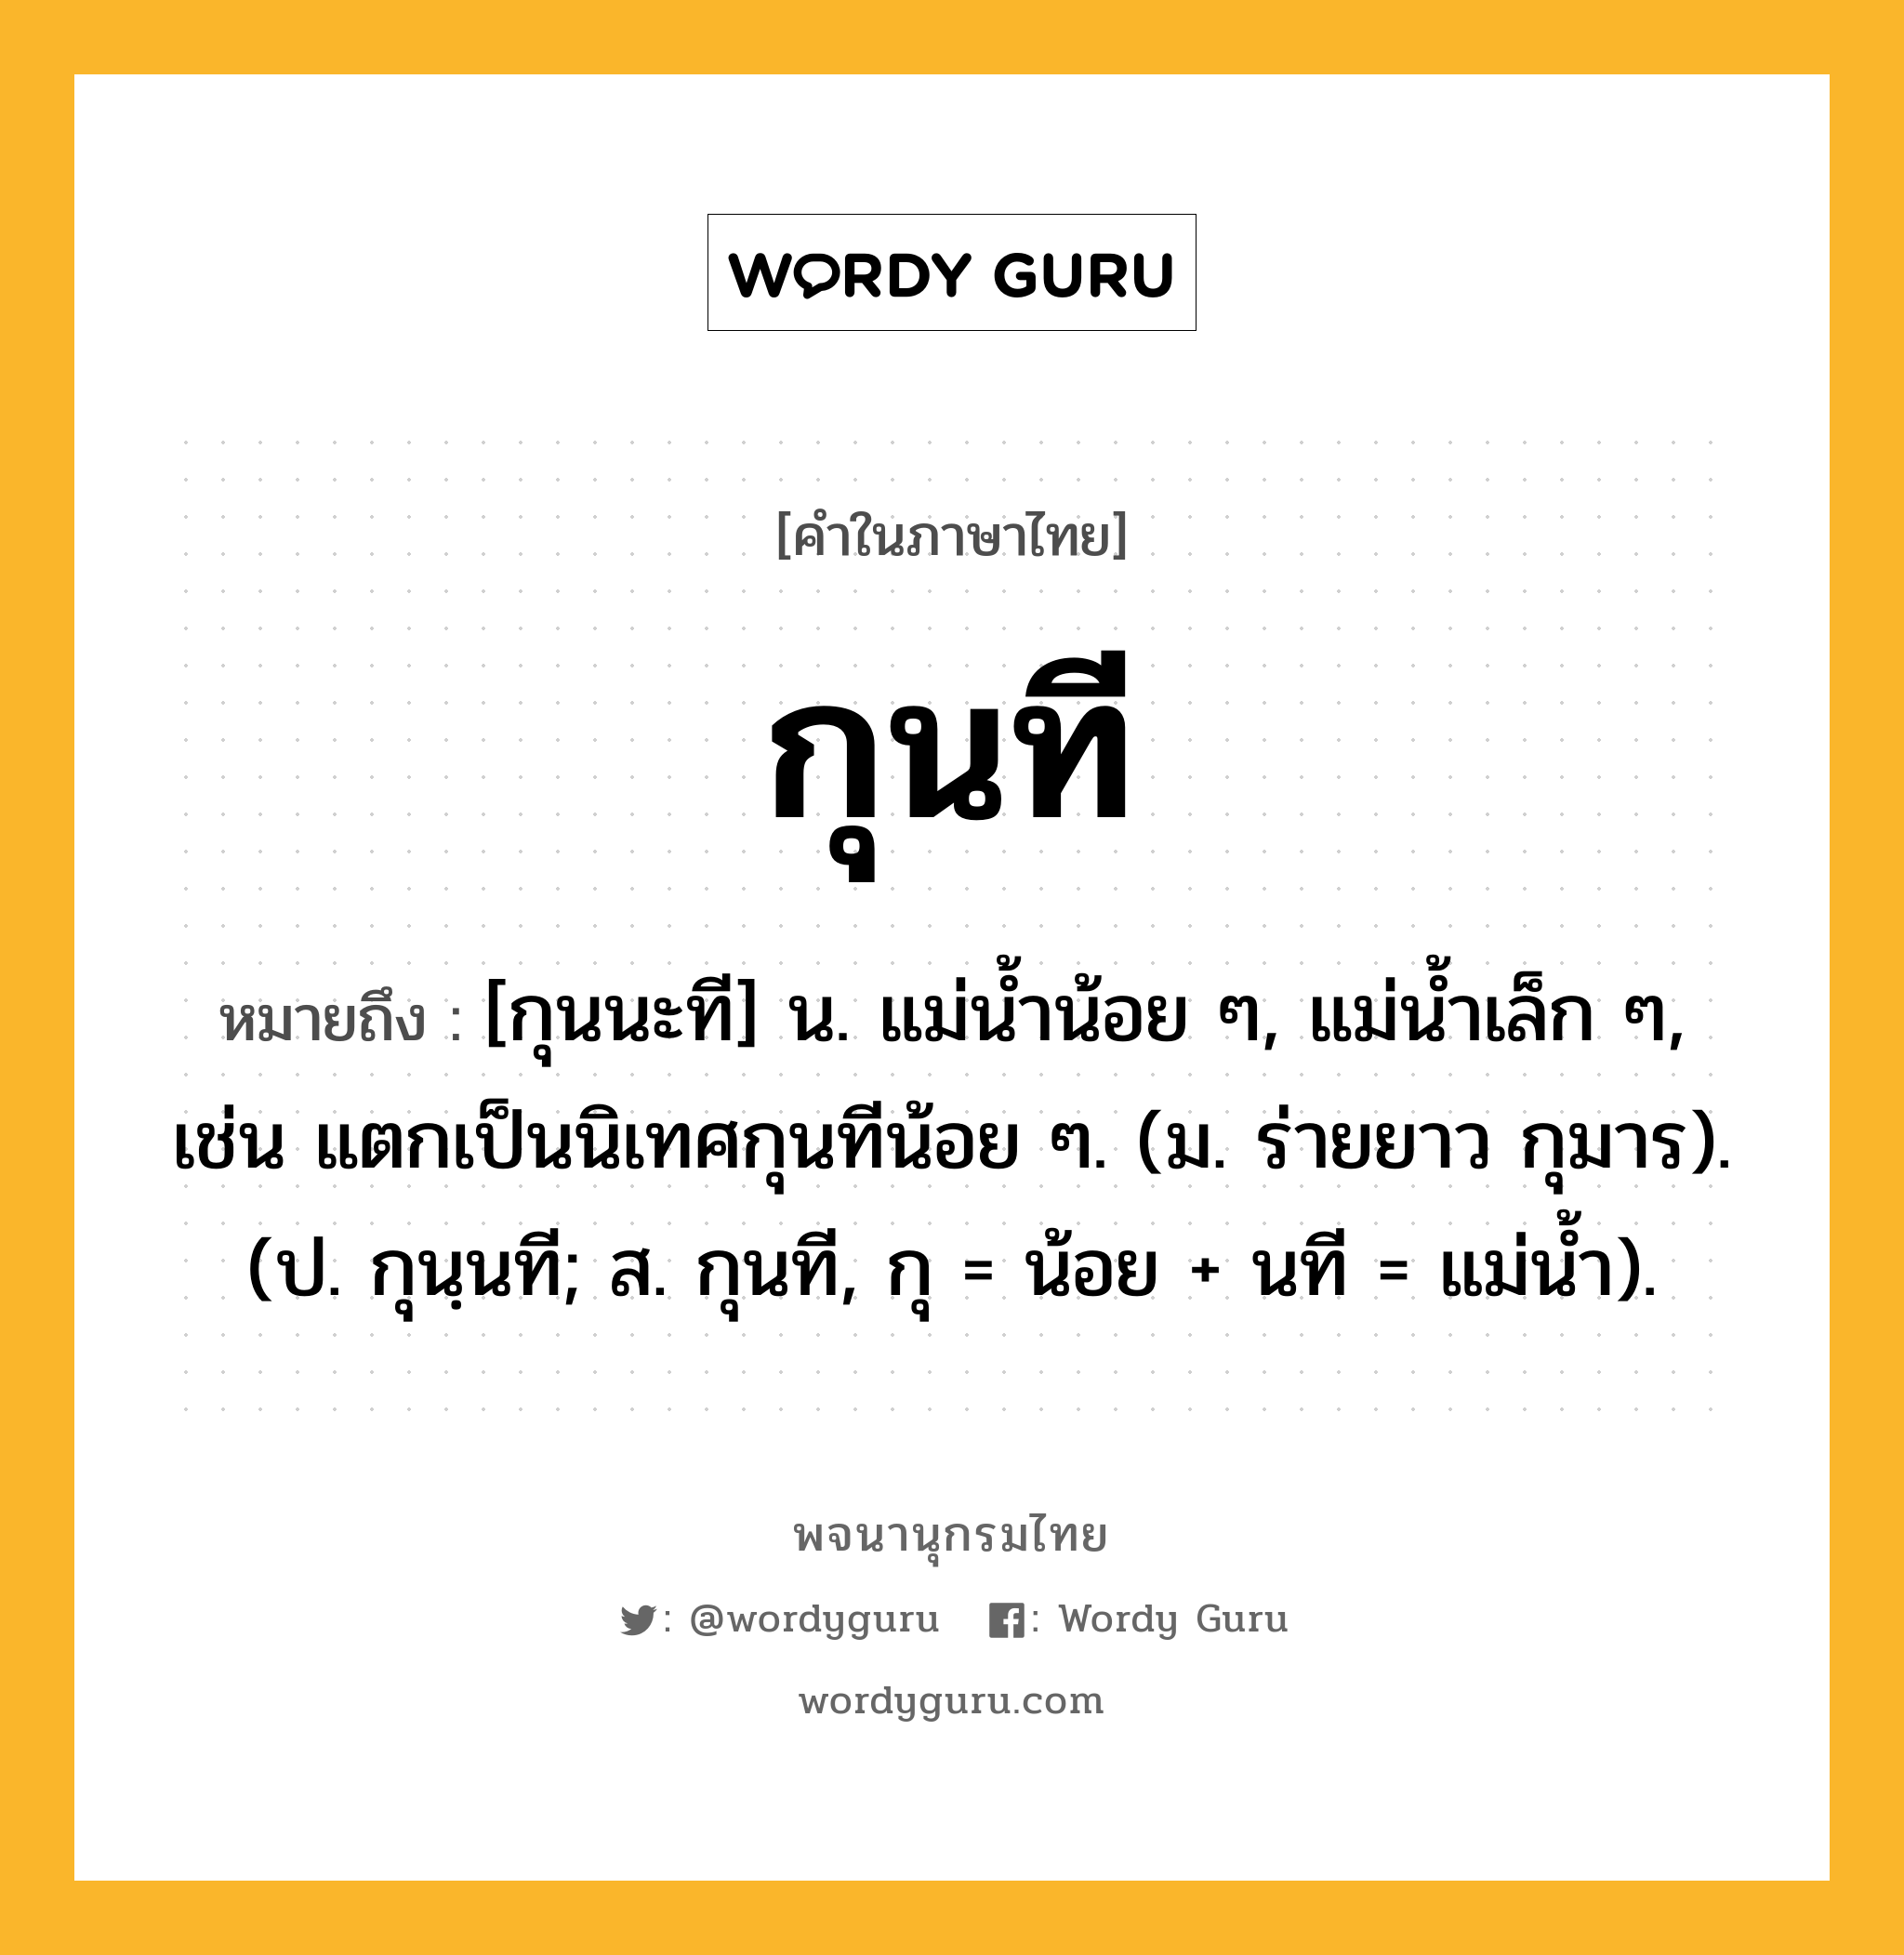 กุนที หมายถึงอะไร?, คำในภาษาไทย กุนที หมายถึง [กุนนะที] น. แม่นํ้าน้อย ๆ, แม่นํ้าเล็ก ๆ, เช่น แตกเป็นนิเทศกุนทีน้อย ๆ. (ม. ร่ายยาว กุมาร). (ป. กุนฺนที; ส. กุนที, กุ = น้อย + นที = แม่นํ้า).